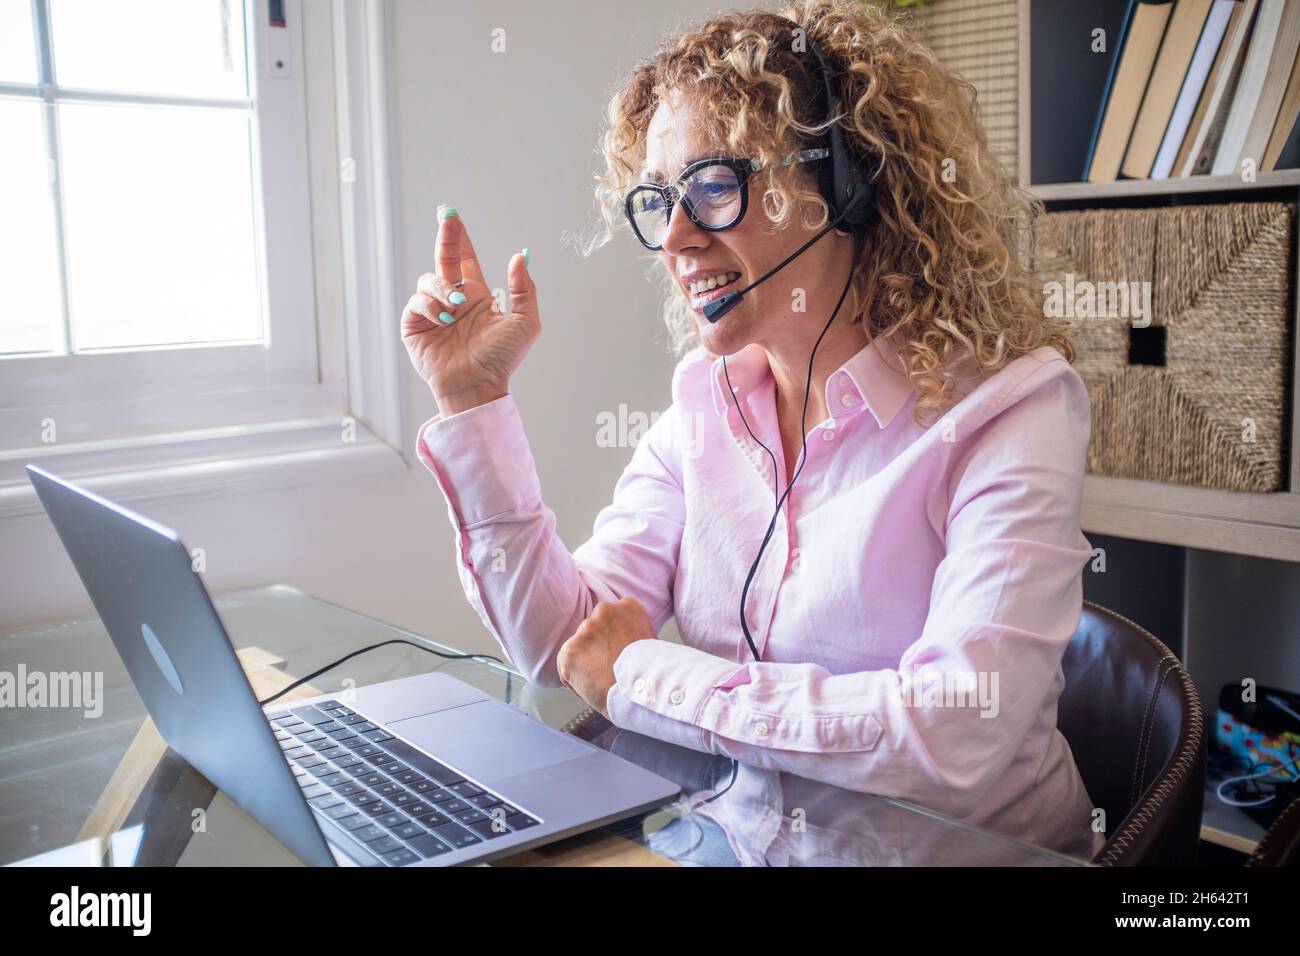 Erwachsene Unternehmer hübsche Frau sprechen auf Videokonferenz Konferenz Zoom mit Laptop-Computer und Kopfhörer mit Mikrofon - Konzept der Geschäftsfrau und Frelance Lebensstil Stockfoto